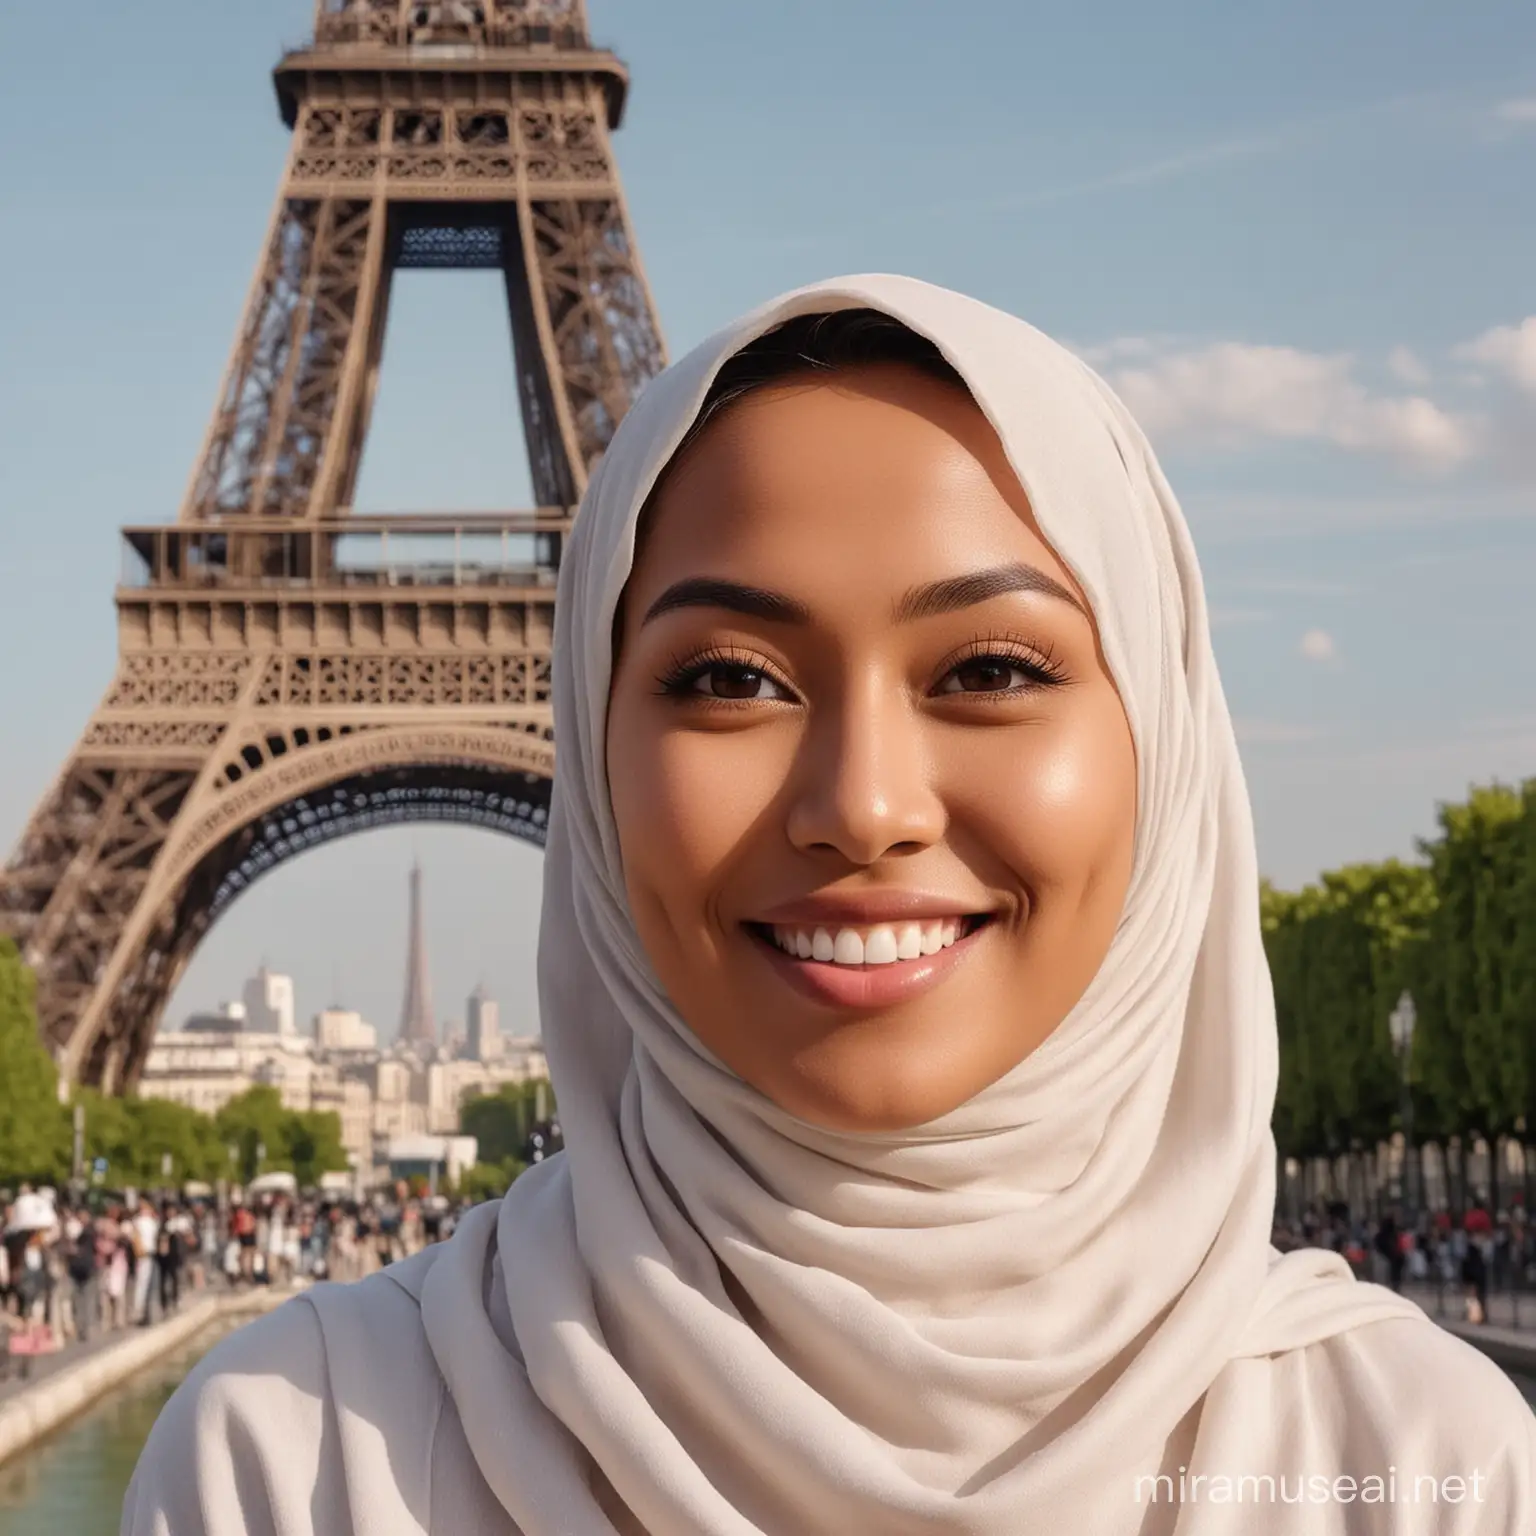 Foto realistis seorang wanita cantik asal Indonesia usia 30 tahun memakai jilbab syar'i, tersenyum menghadap depan dengan latar belakang menara Eiffel, full hd, sangat nyata, fokus tajam tanpa cacat